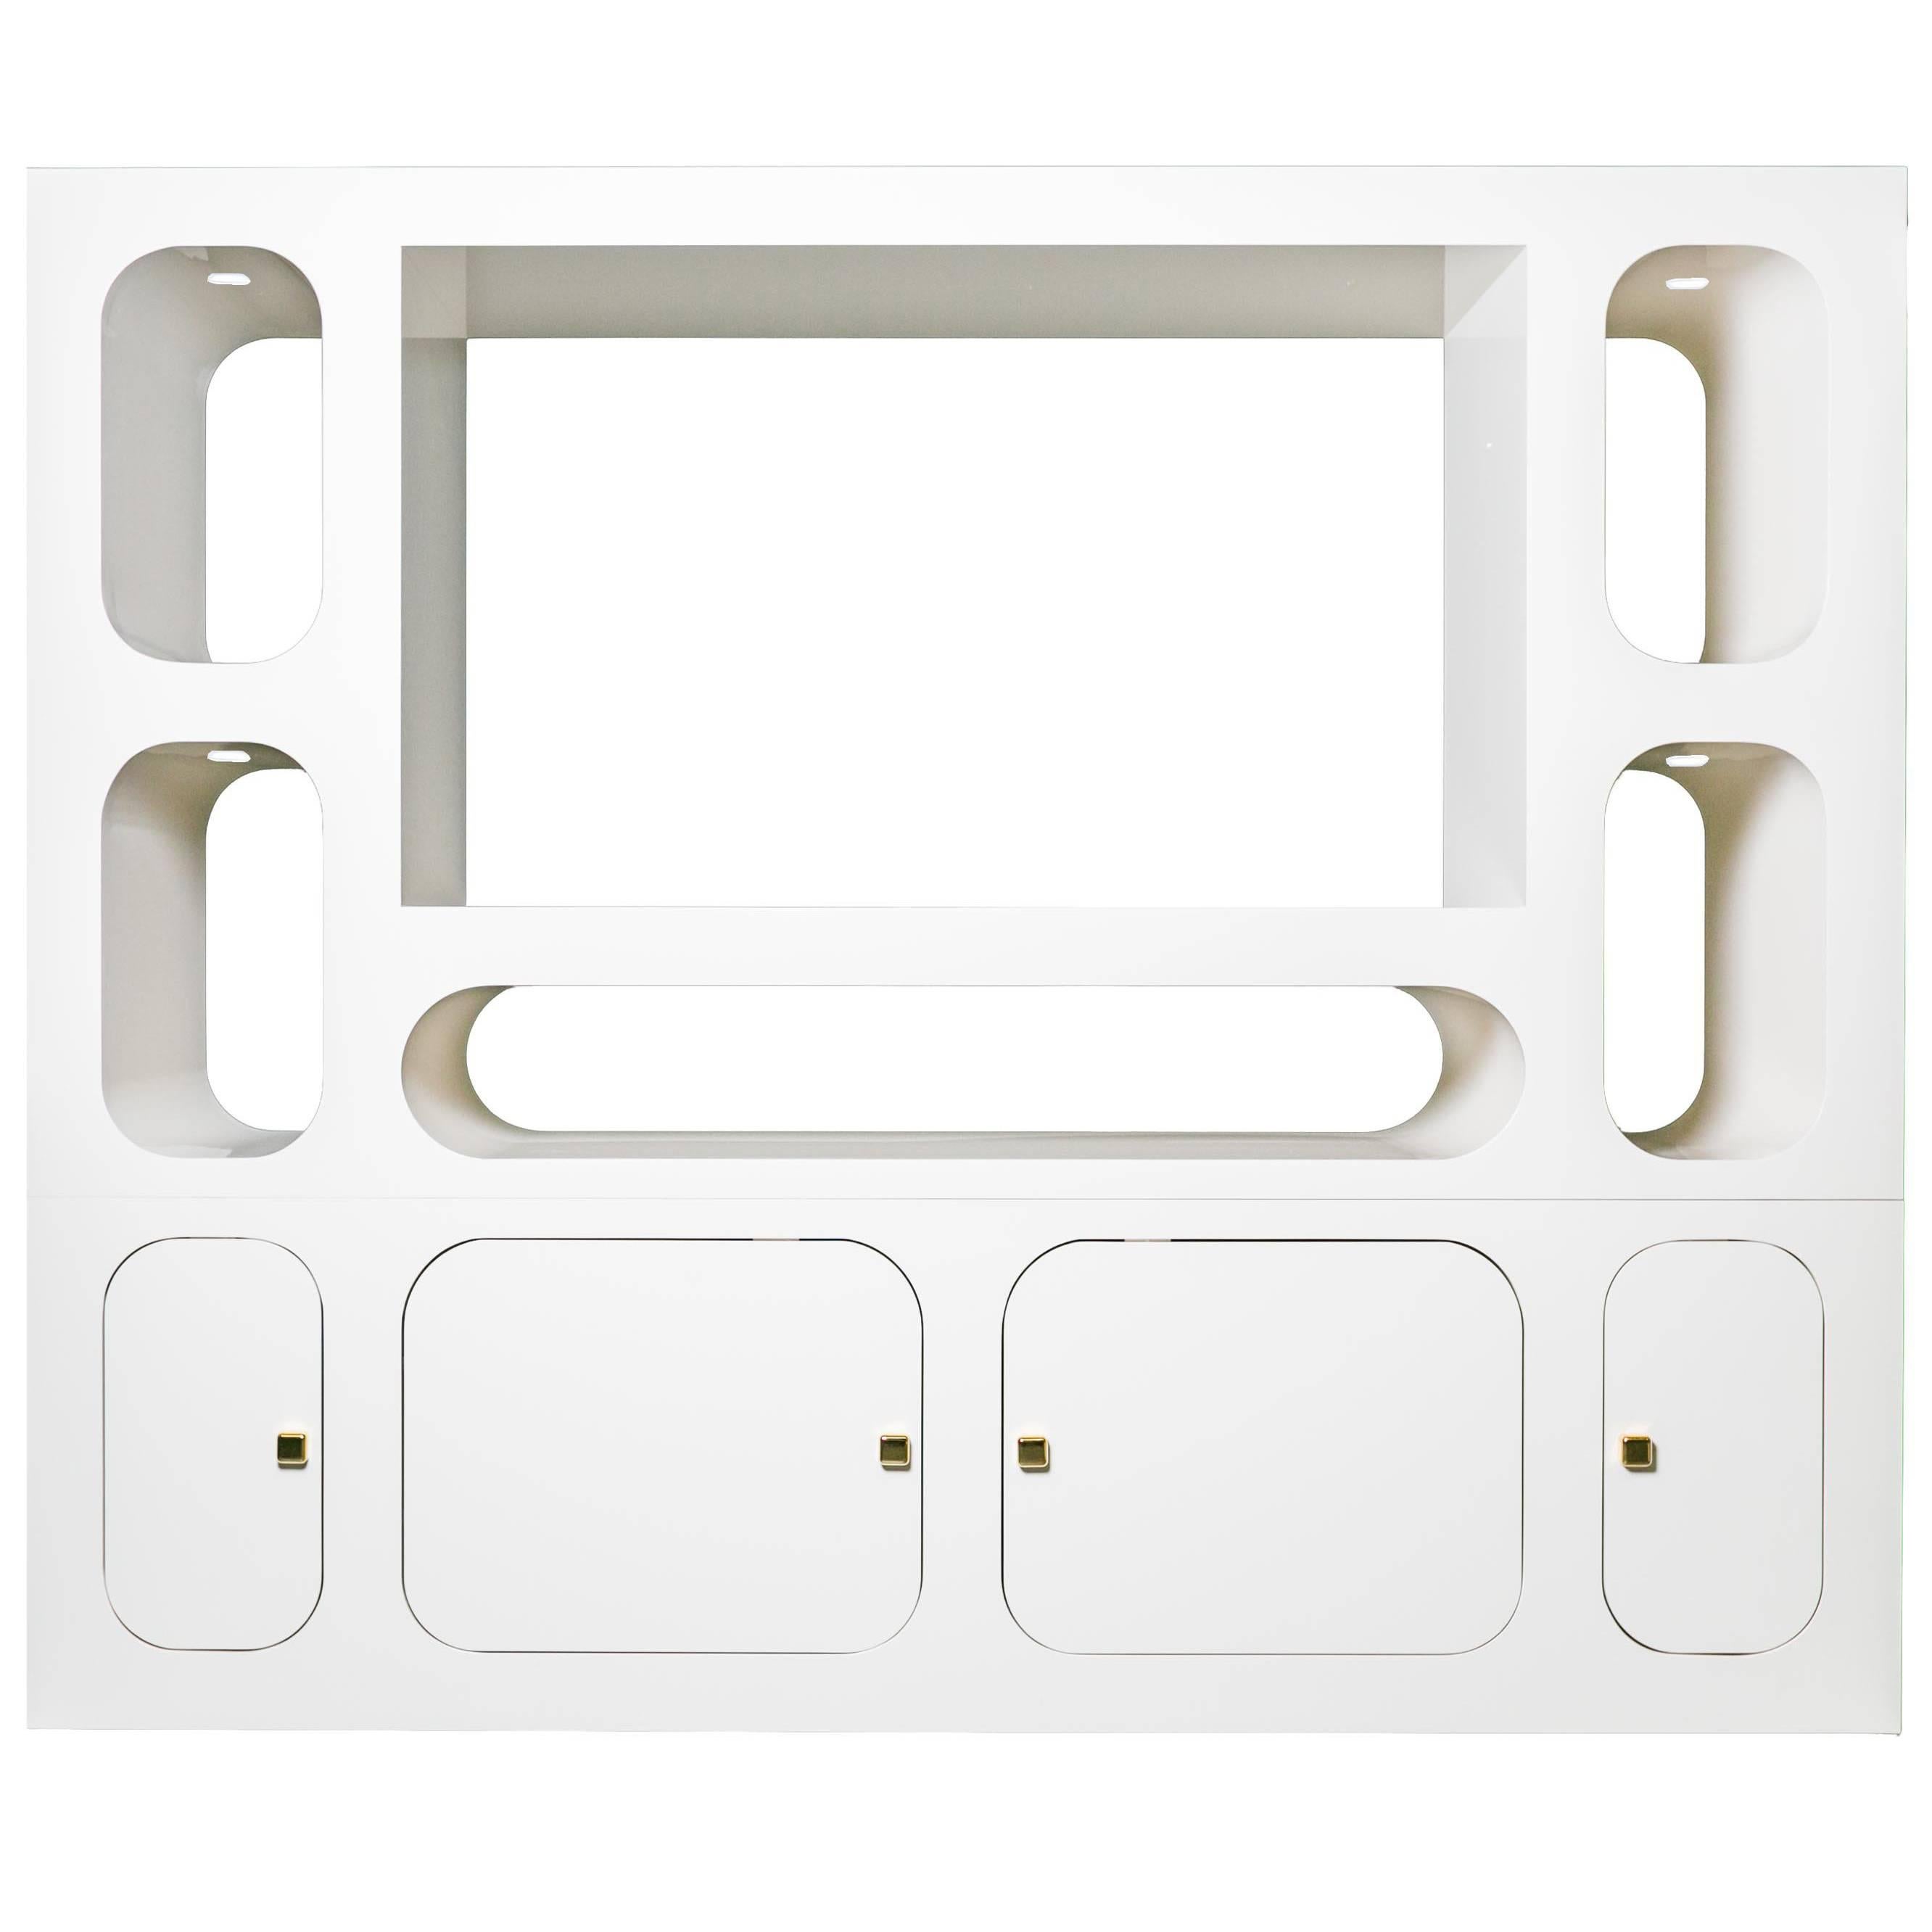 Stand TV ou meuble multimédia contemporain Carosello en aluminium en vente